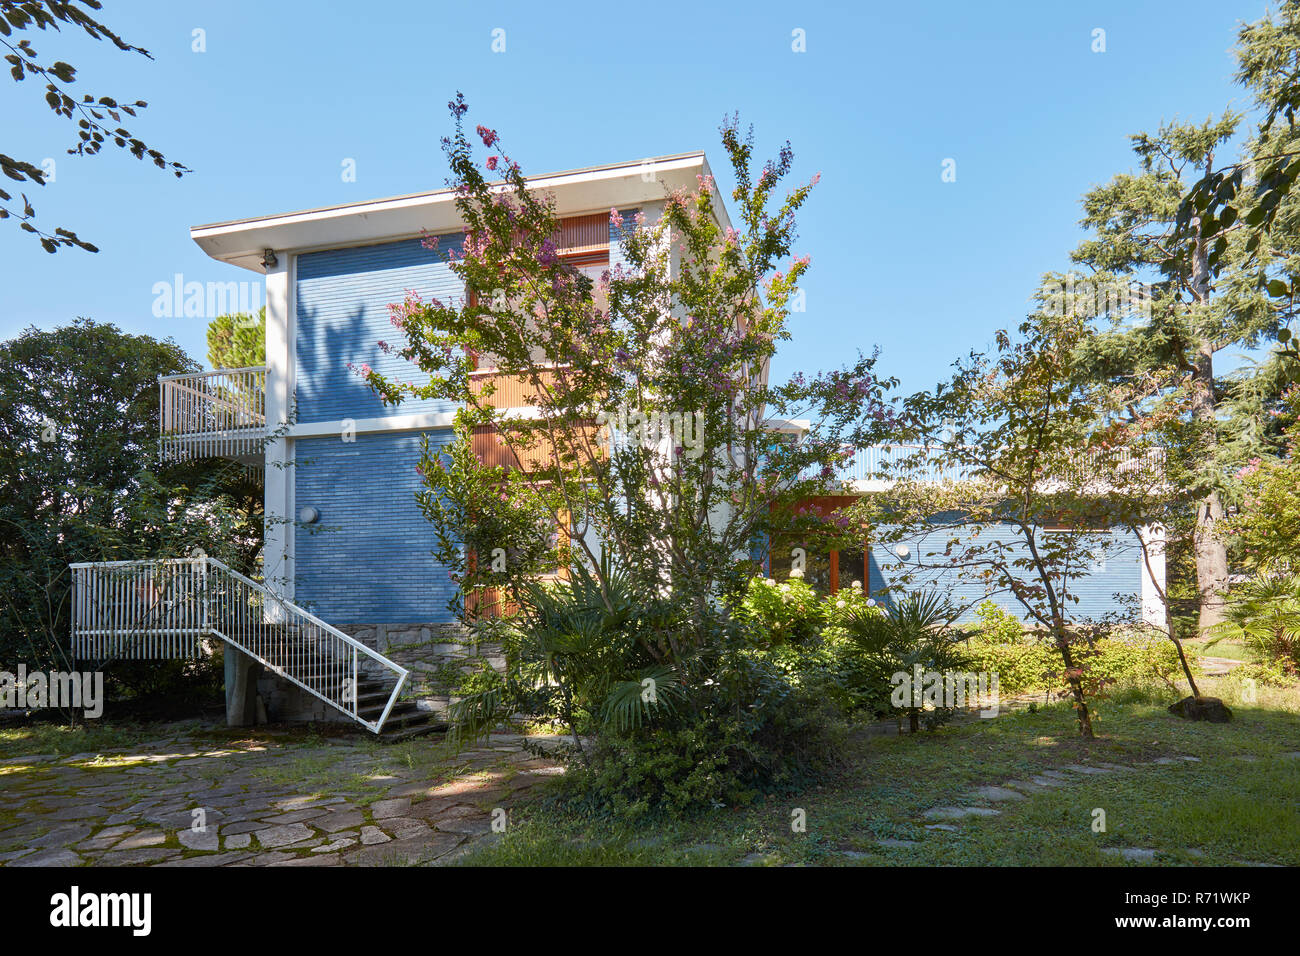 Villa con blu parete piastrellata e giardino in una soleggiata giornata estiva, cielo blu chiaro Foto Stock